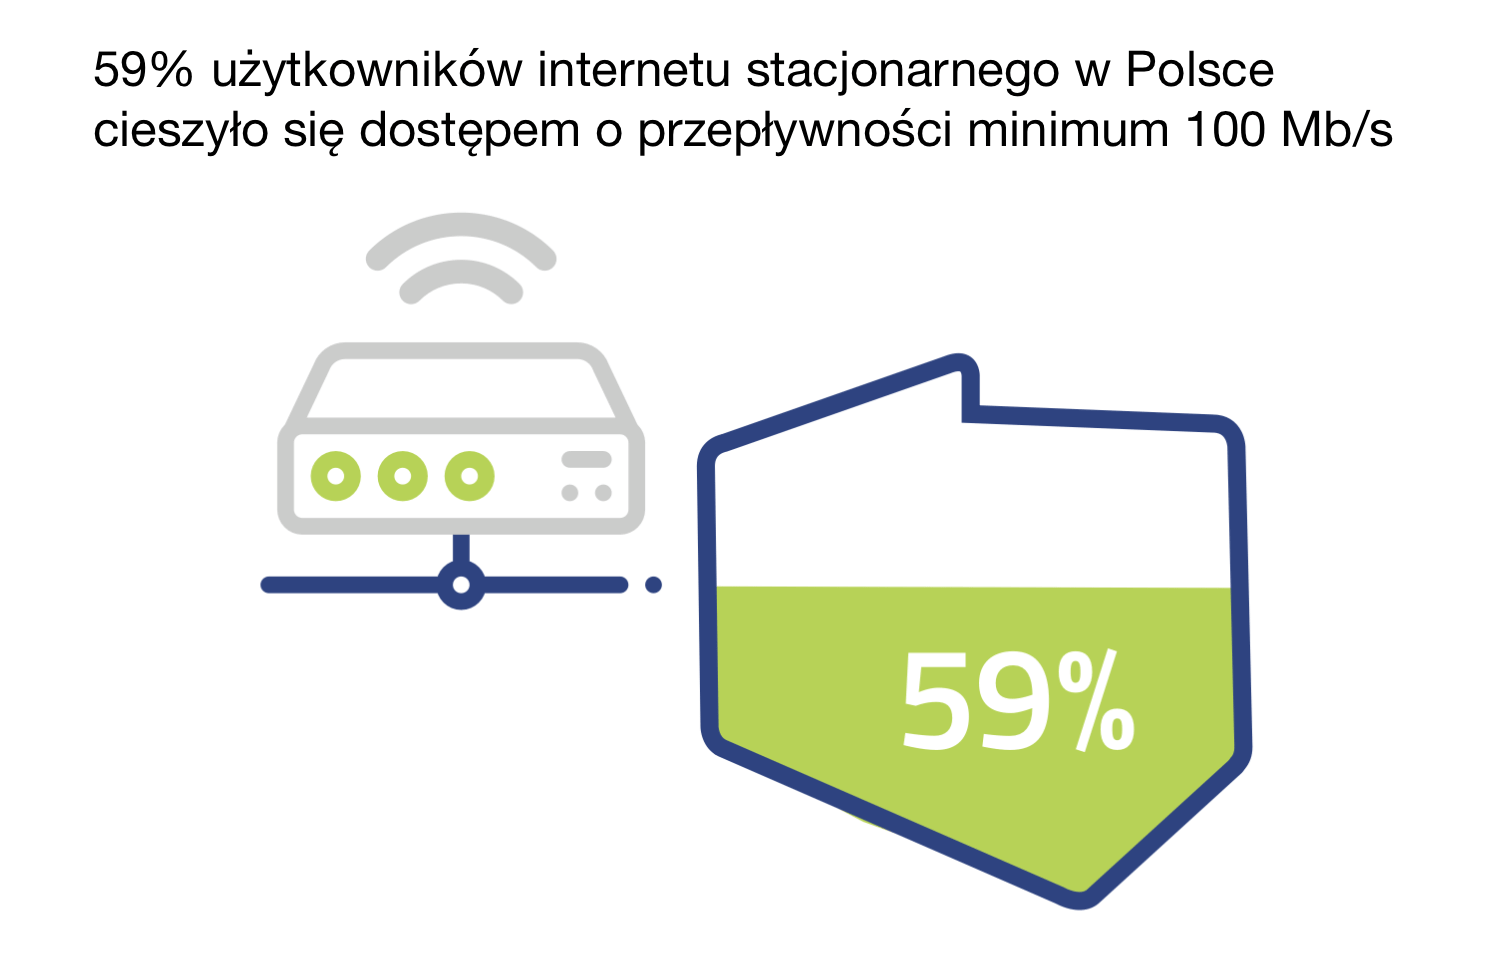 59 proc. użytkowników internetu stacjonarnego w Polsce (w 2020 r.) cieszyło się dostępem powyżej 100 Mb/s